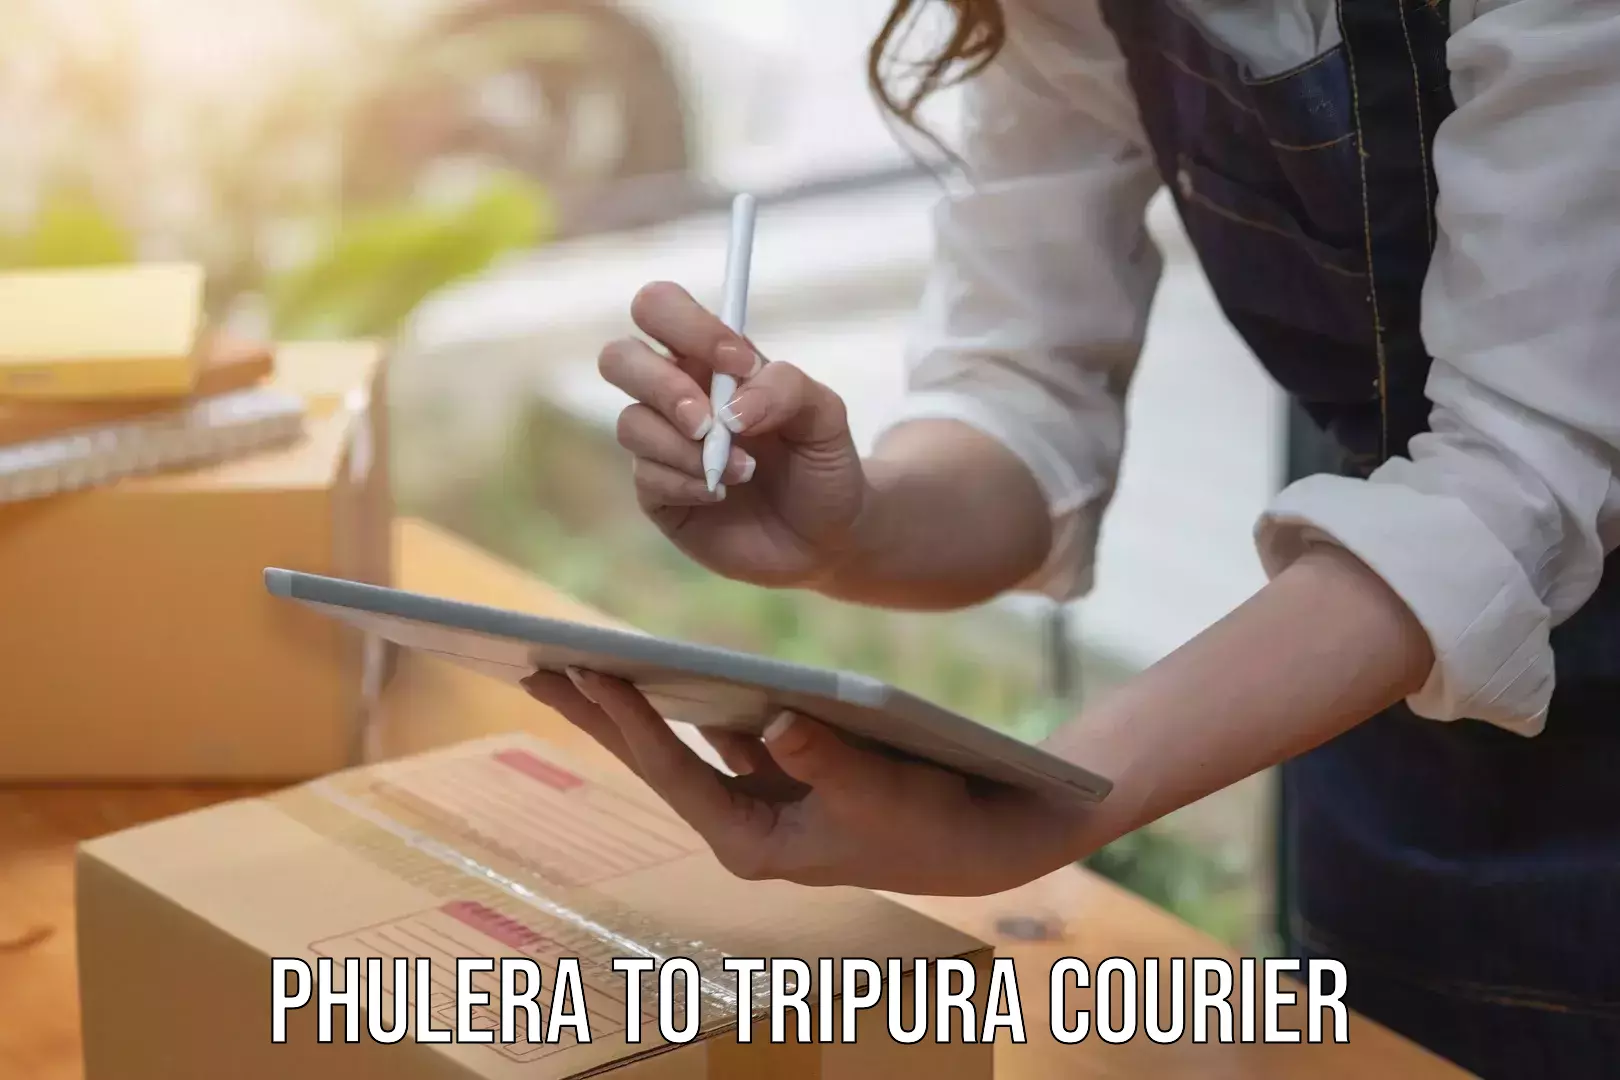 Courier service comparison Phulera to North Tripura